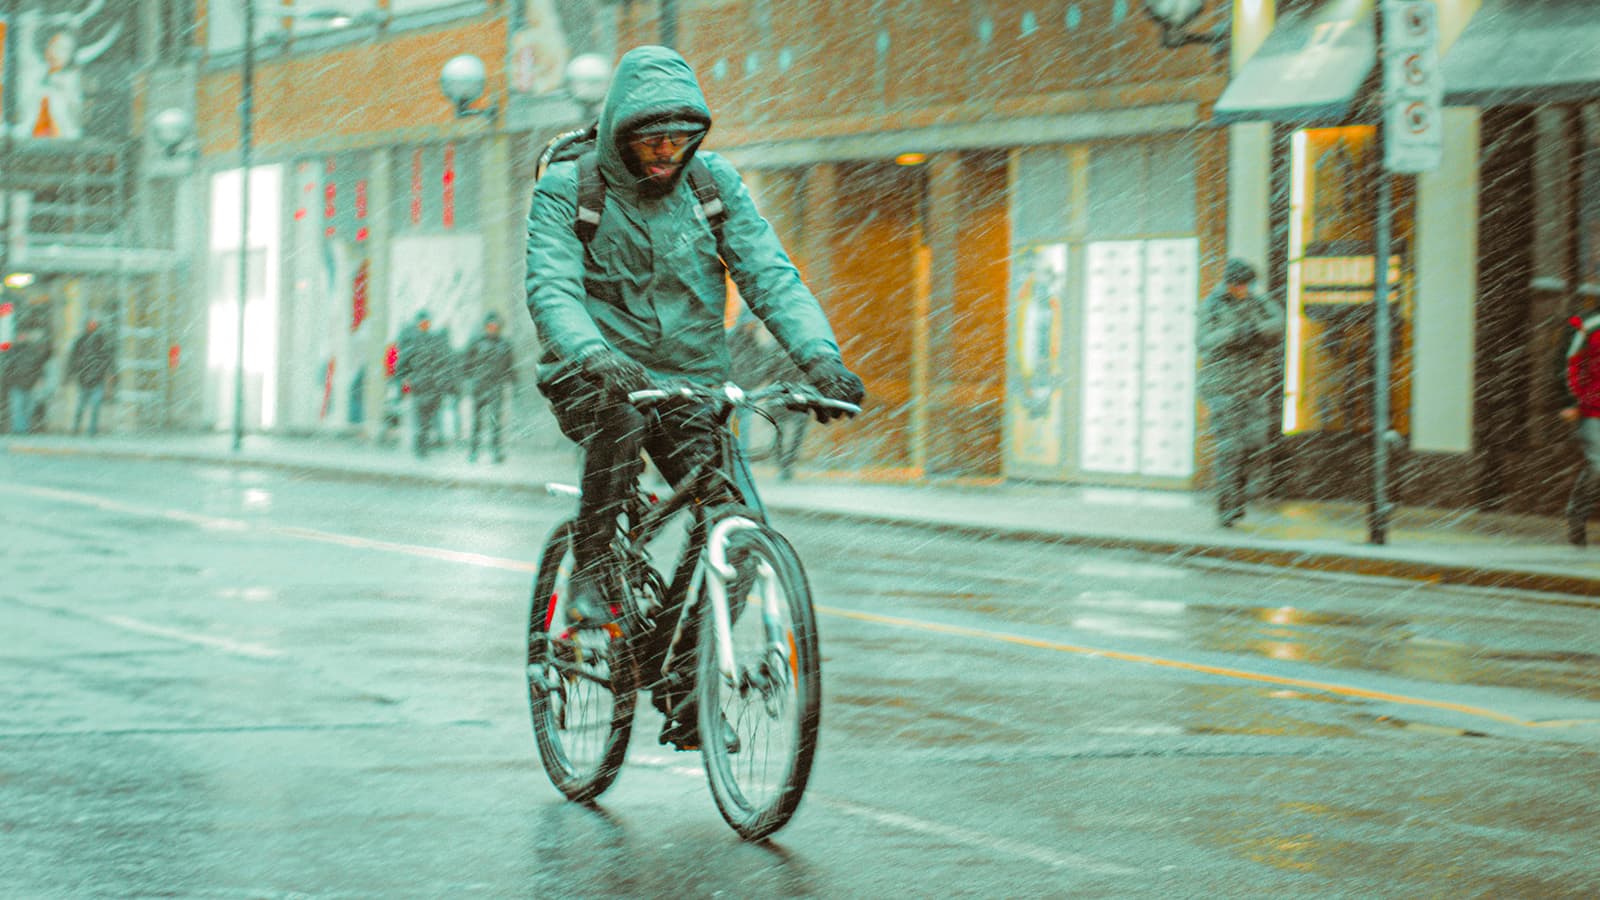 Nie jesteśmy z cukru, czyli jak bezpiecznie jeździć rowerem w deszczu